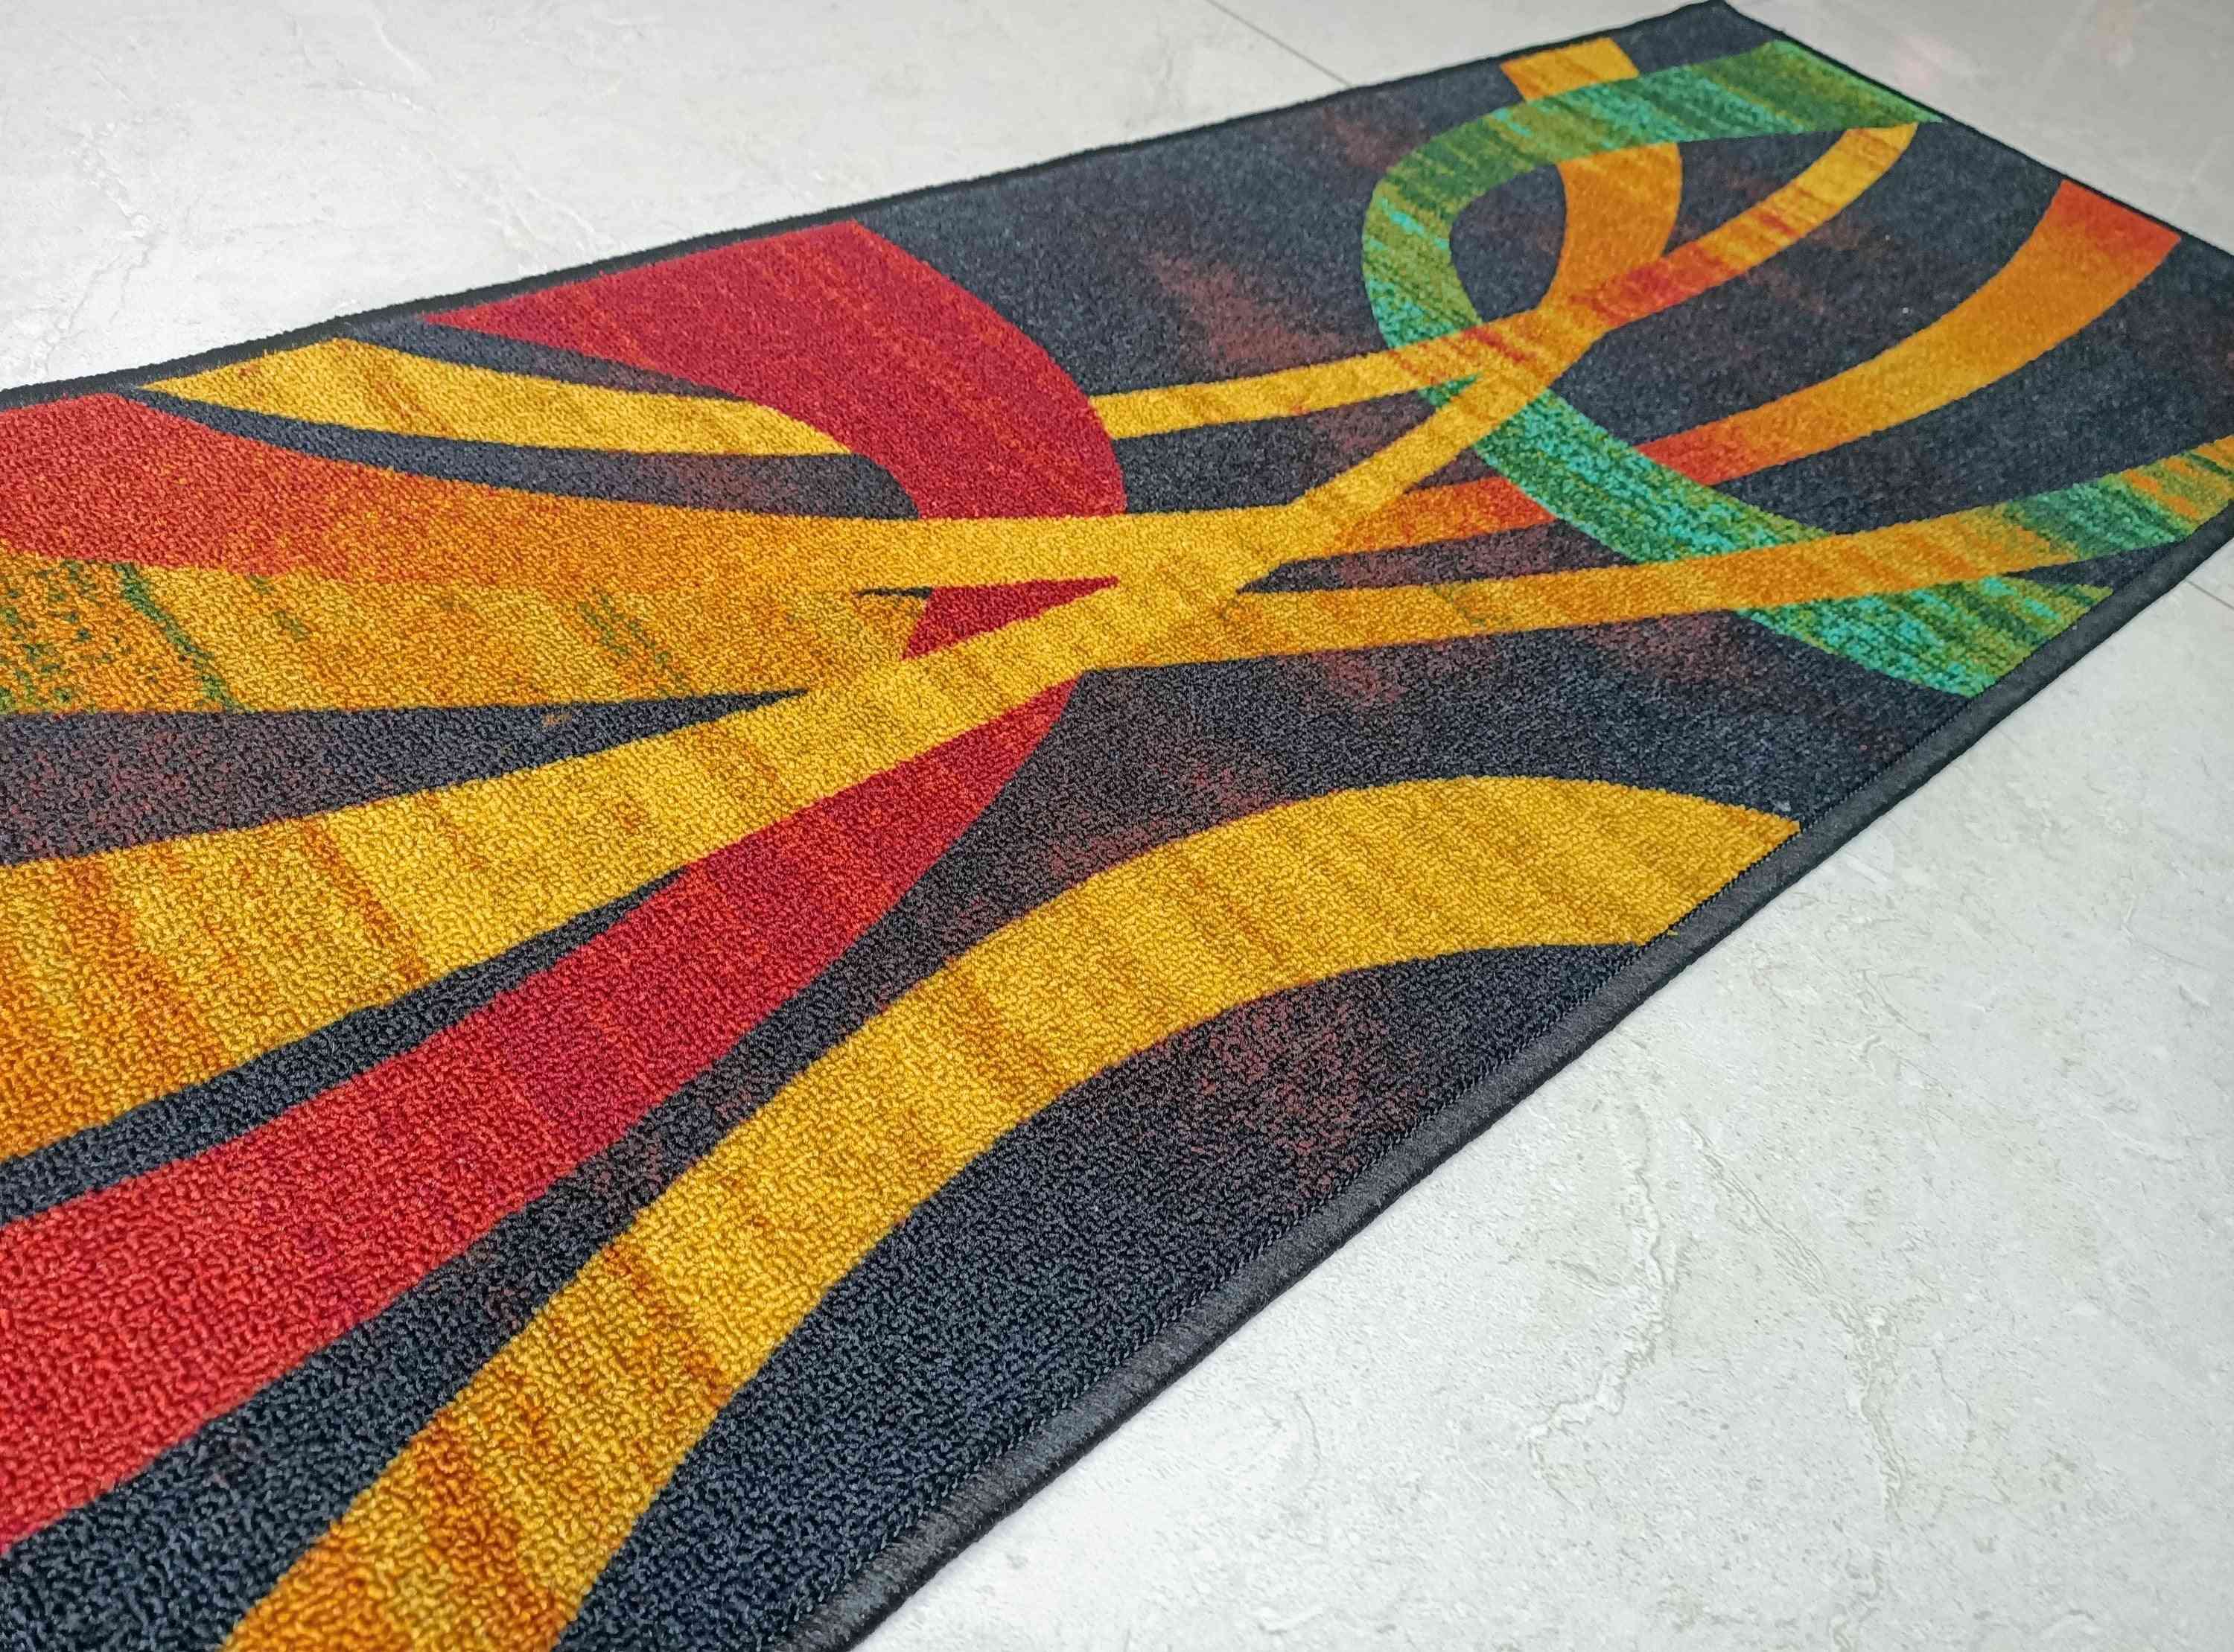 Nowoczesne współczesne dywany / chodniki tematyczne